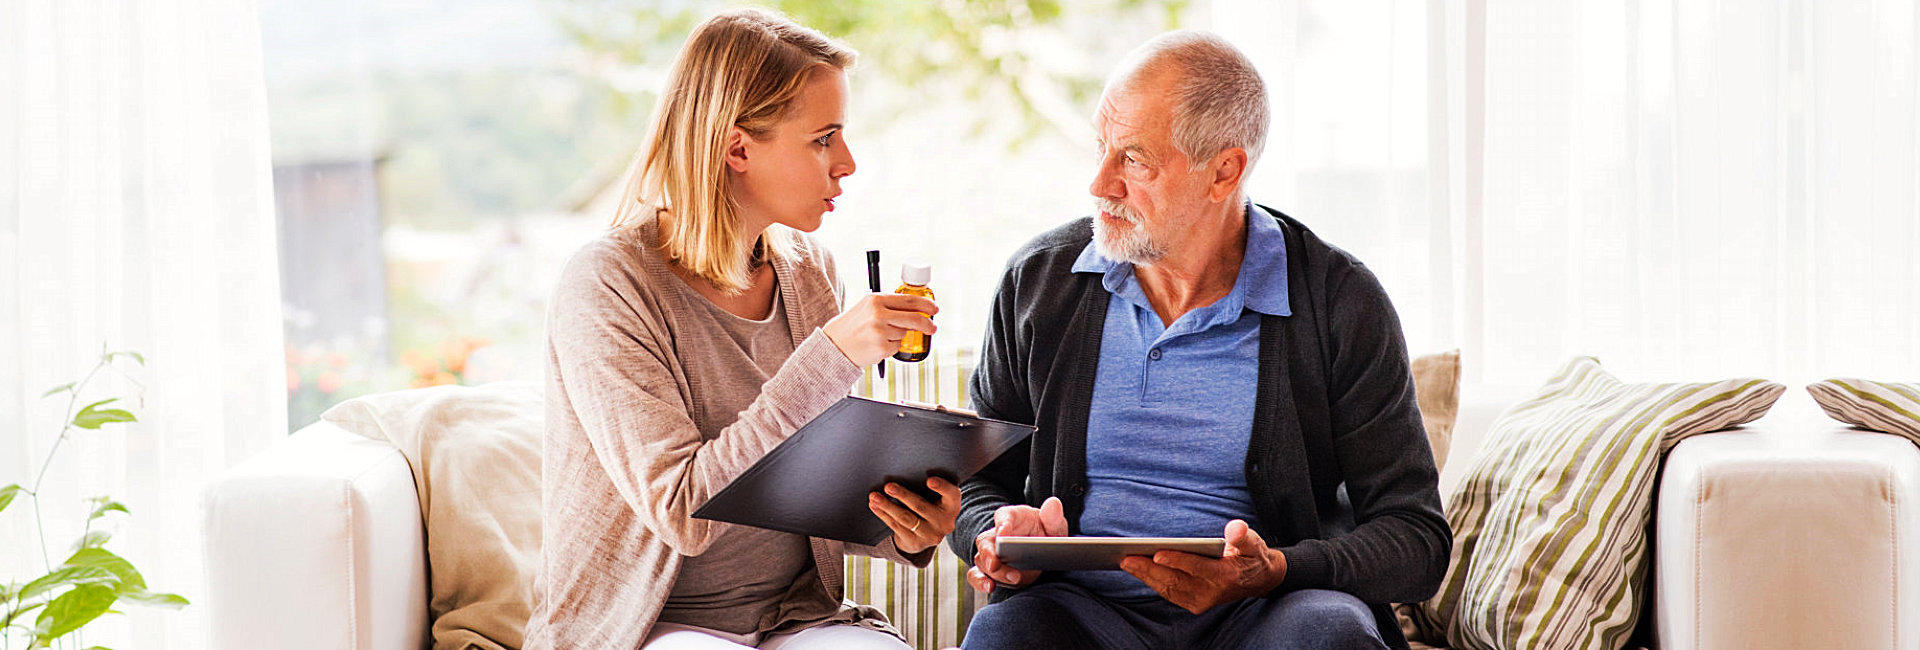 caregiver and senior man having a conversation